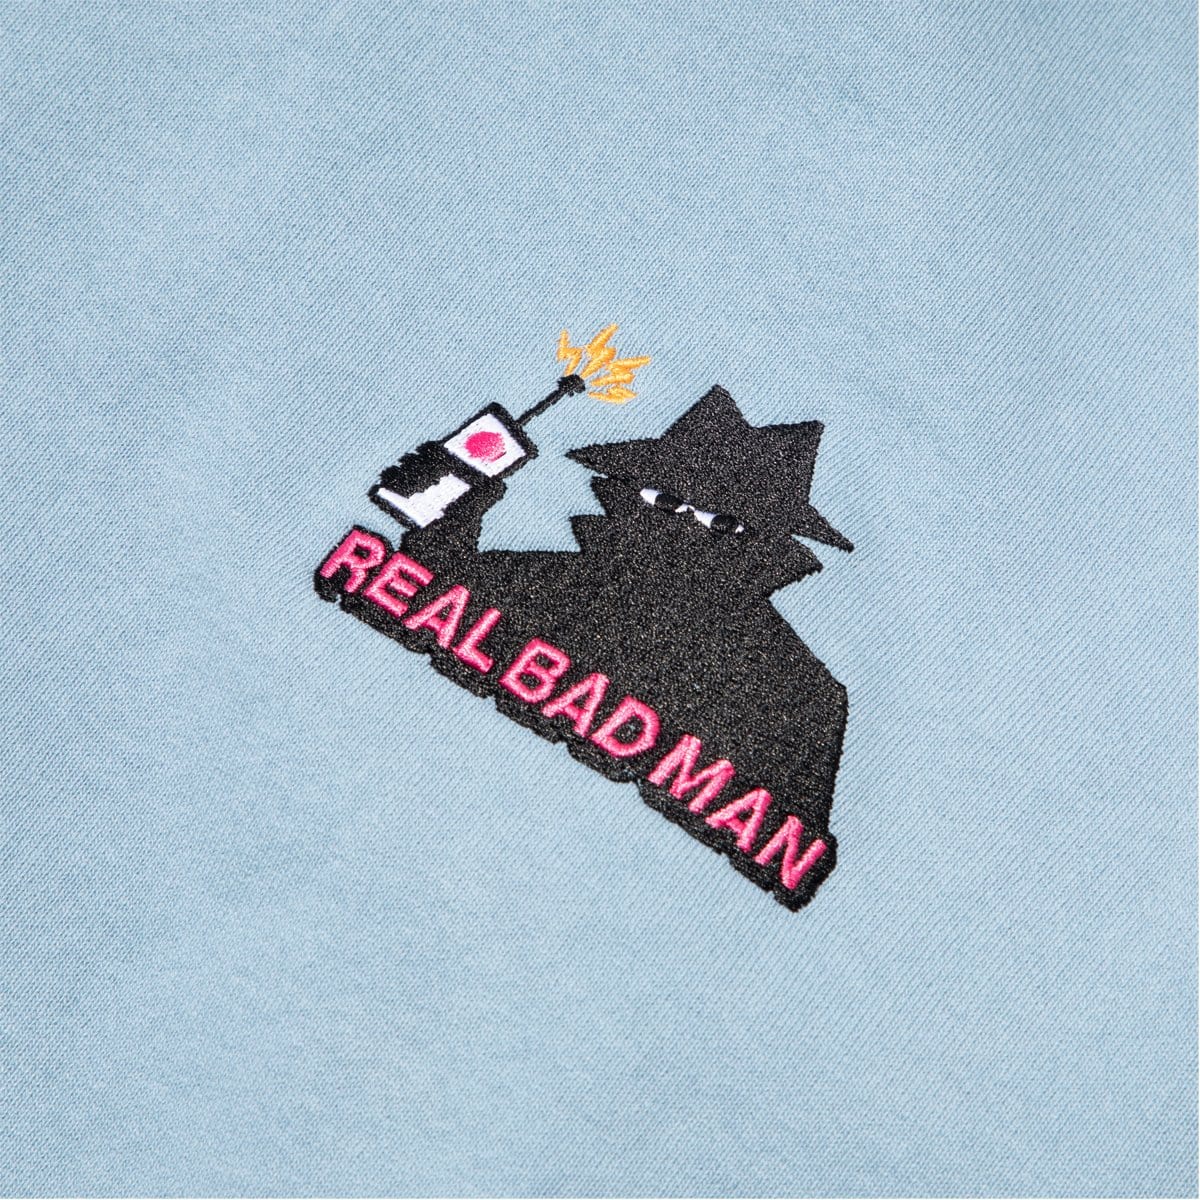 Real Bad Man Hoodies & Sweatshirts RBM VOLUME 5 HOODIE